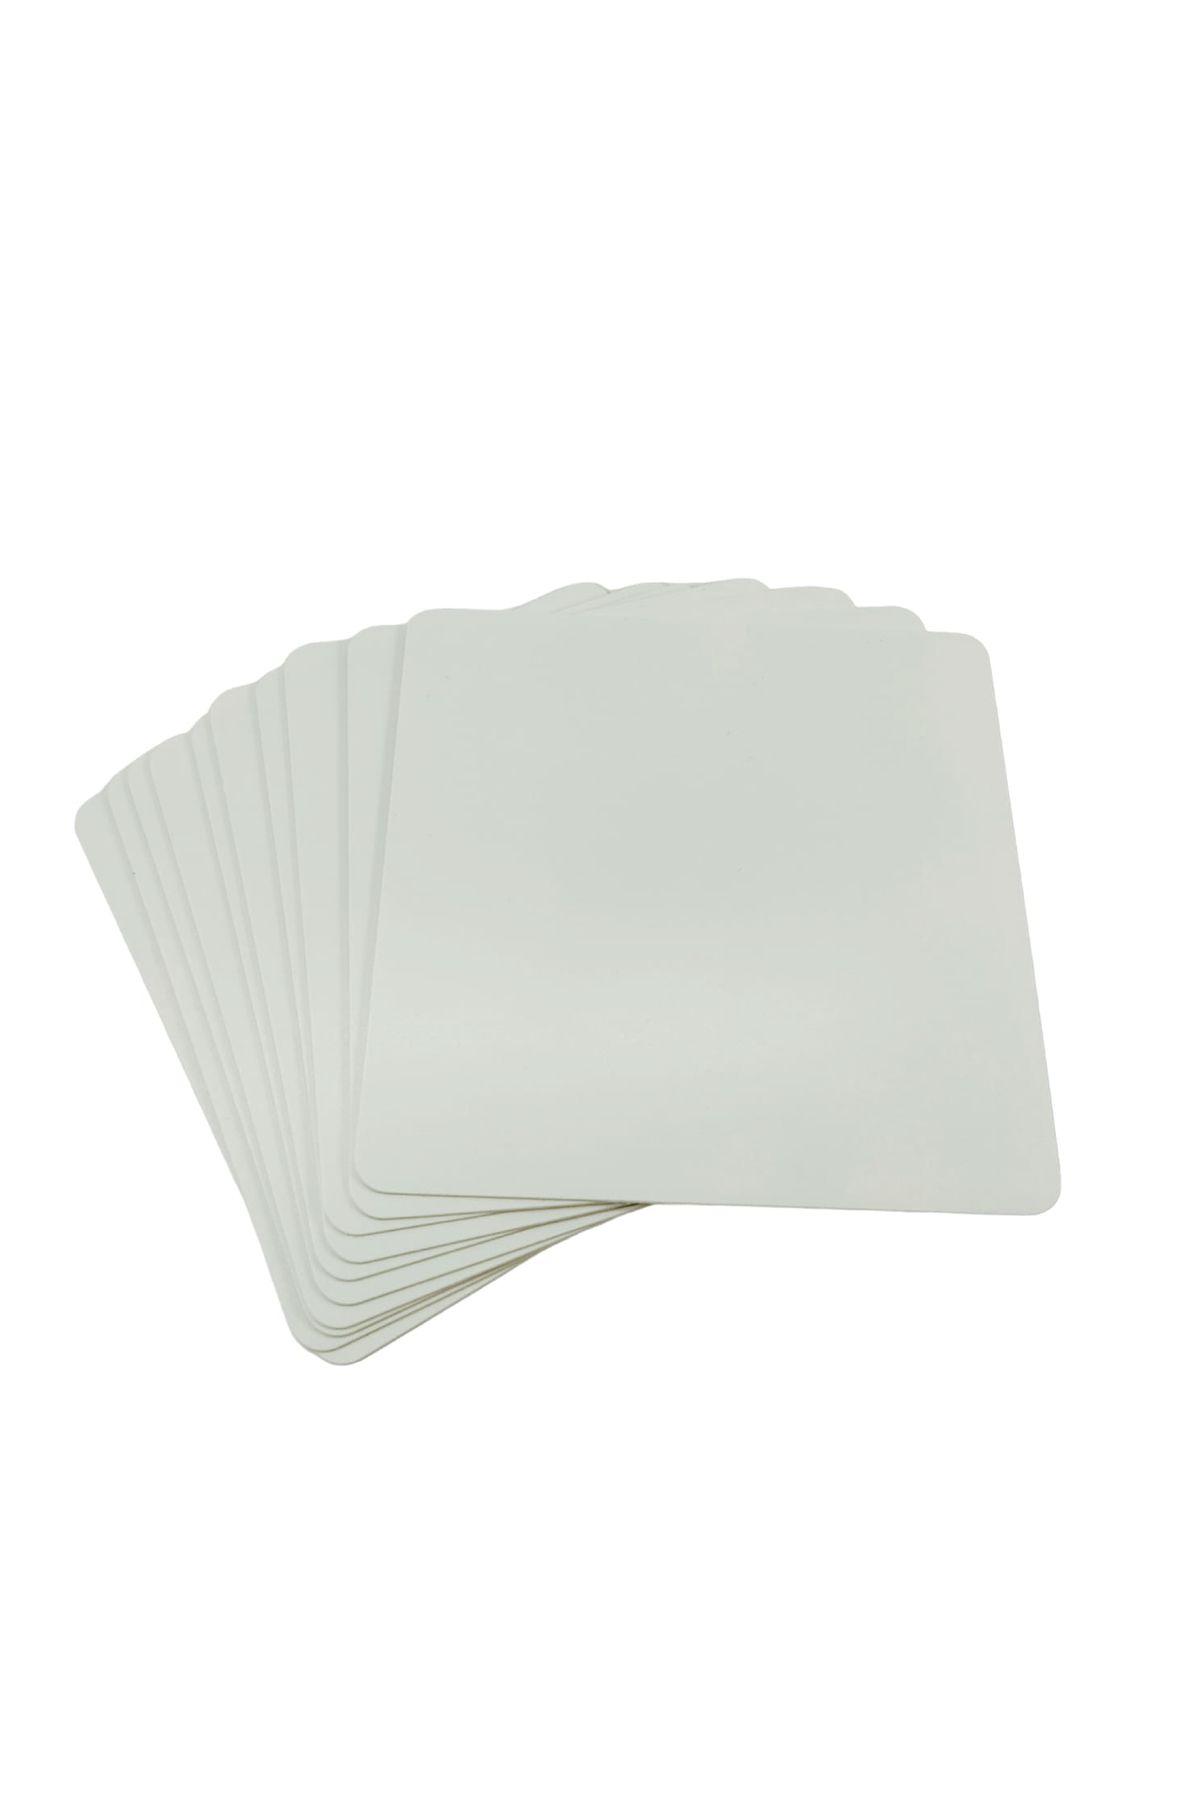 DamgaMarket PVC Yazılıp Silinebilir Fiyat Etiketlik Beyaz, PVC Beyaz Yazı Tahtası 10cm x 10cm - 10 Adet